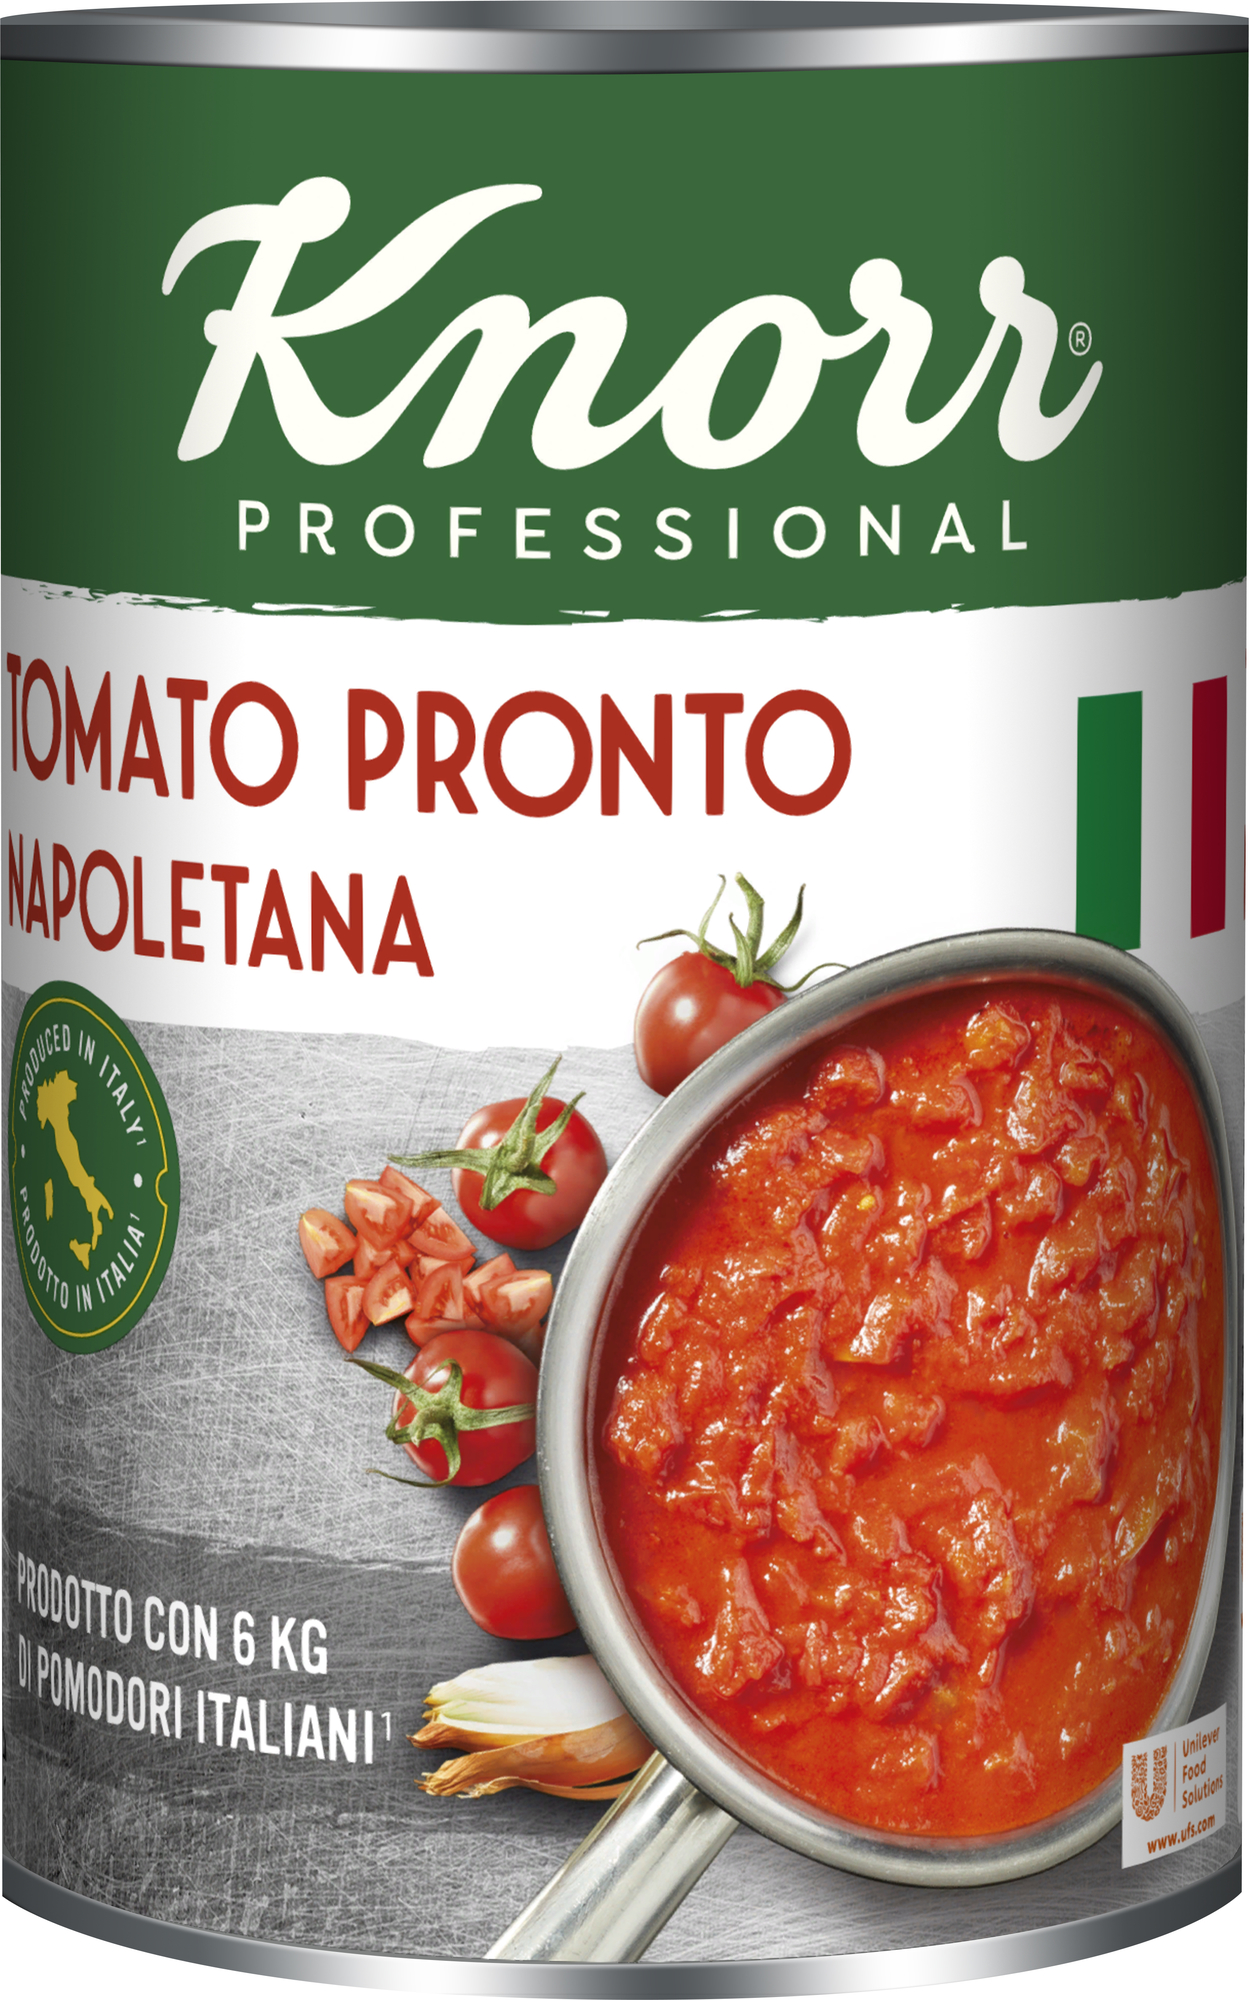 Tomato Pronto Napoletana 4150ml